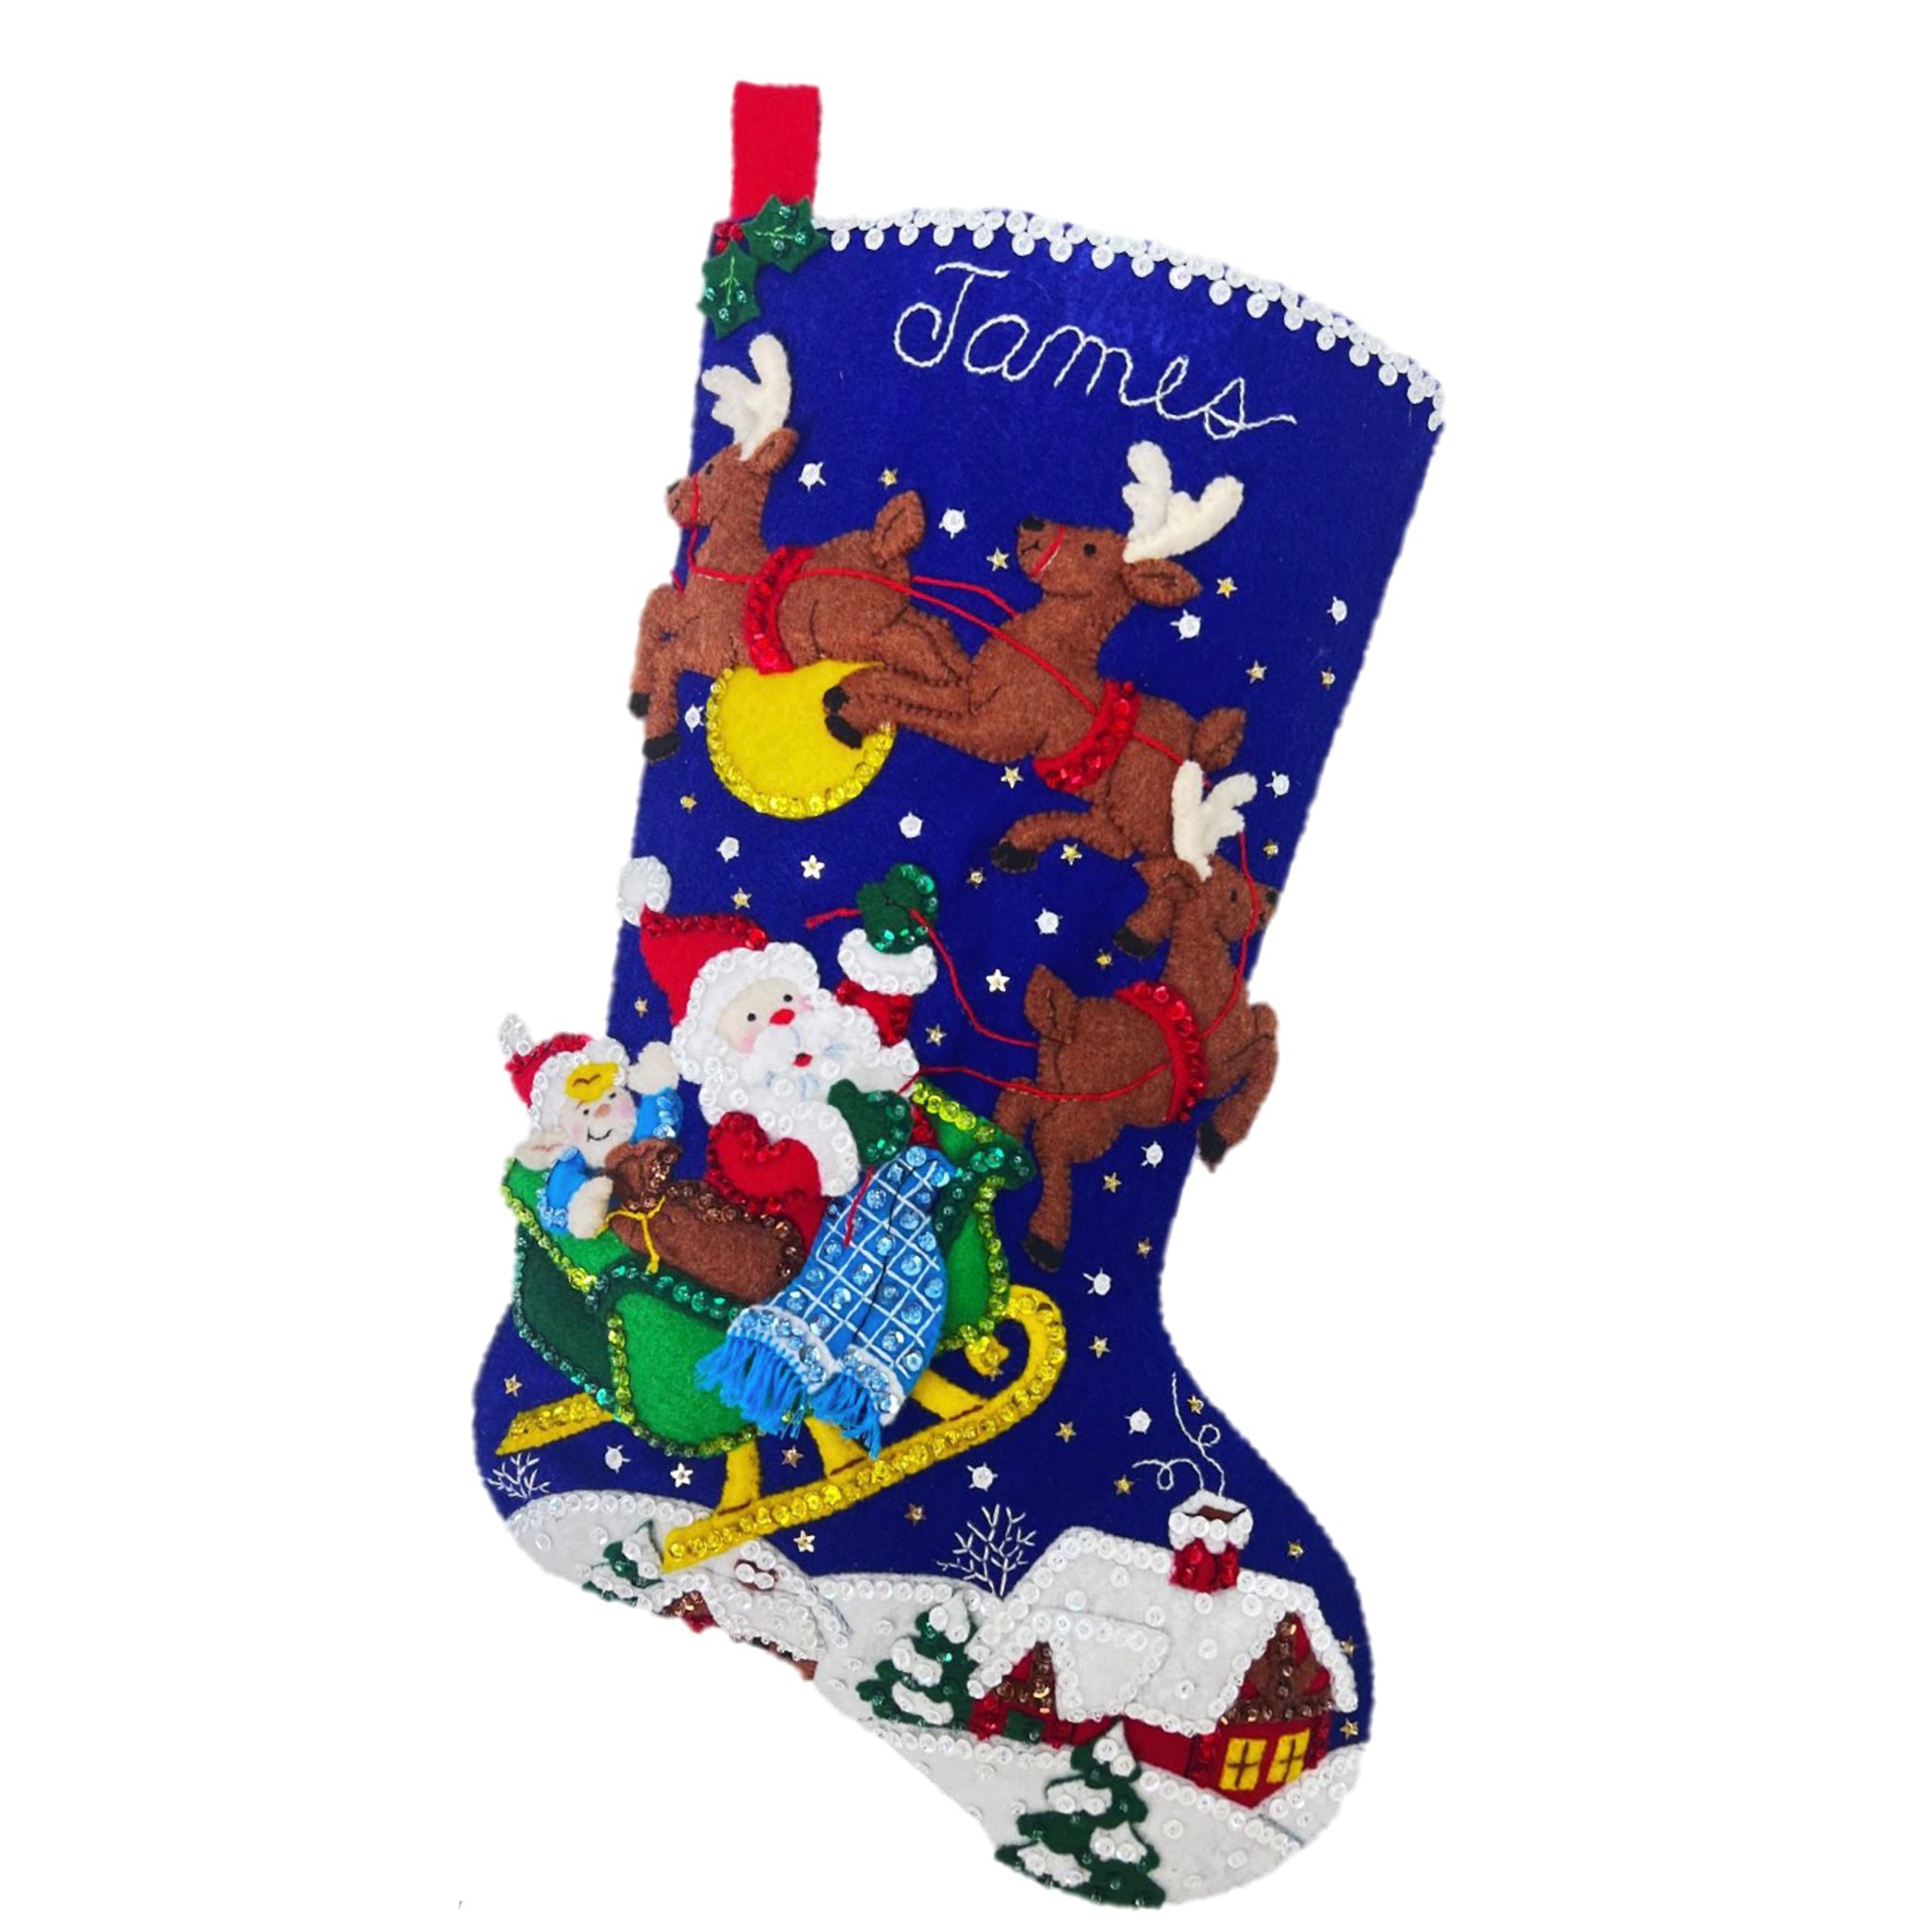 Santas Surprises Felt Appliqué Christmas Stocking Kit 82729 Sleigh Toys Gifts